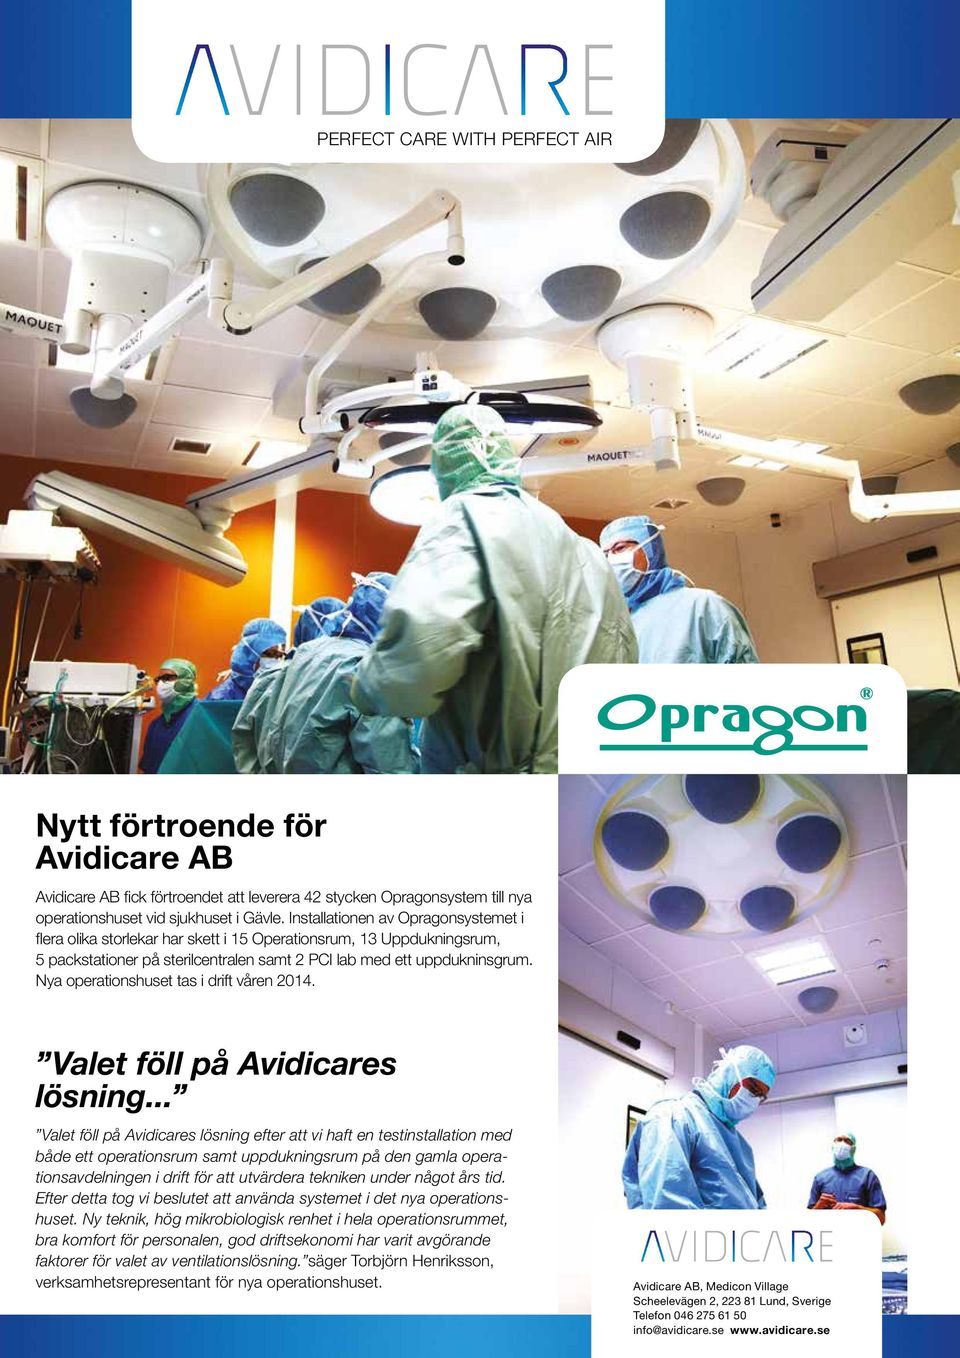 Nya operationshuset tas i drift våren 2014. Valet föll på Avidicares lösning.